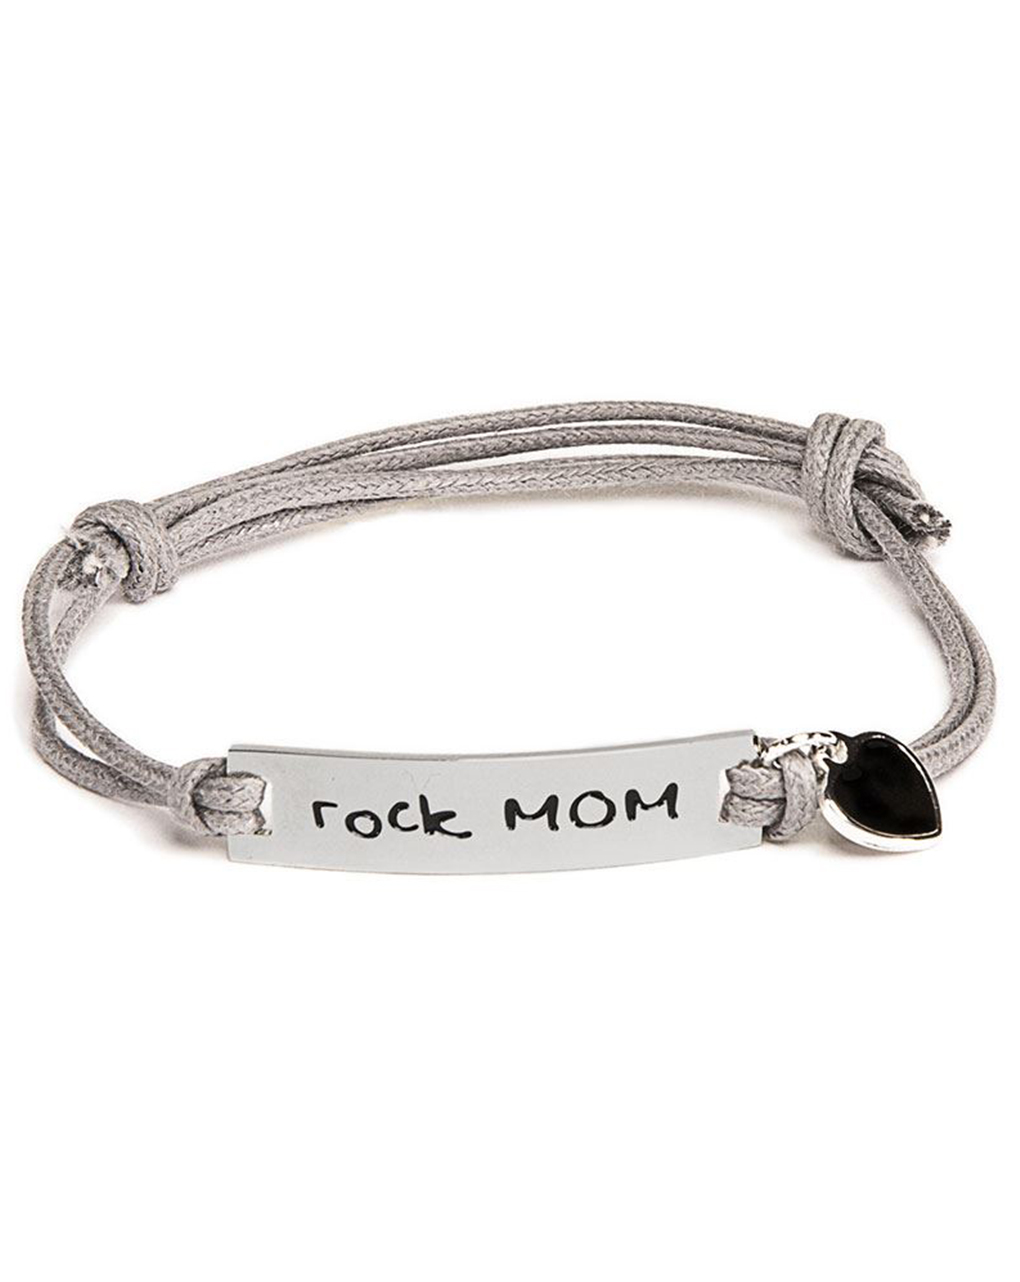 M’ami® tag rock mom - MAMI